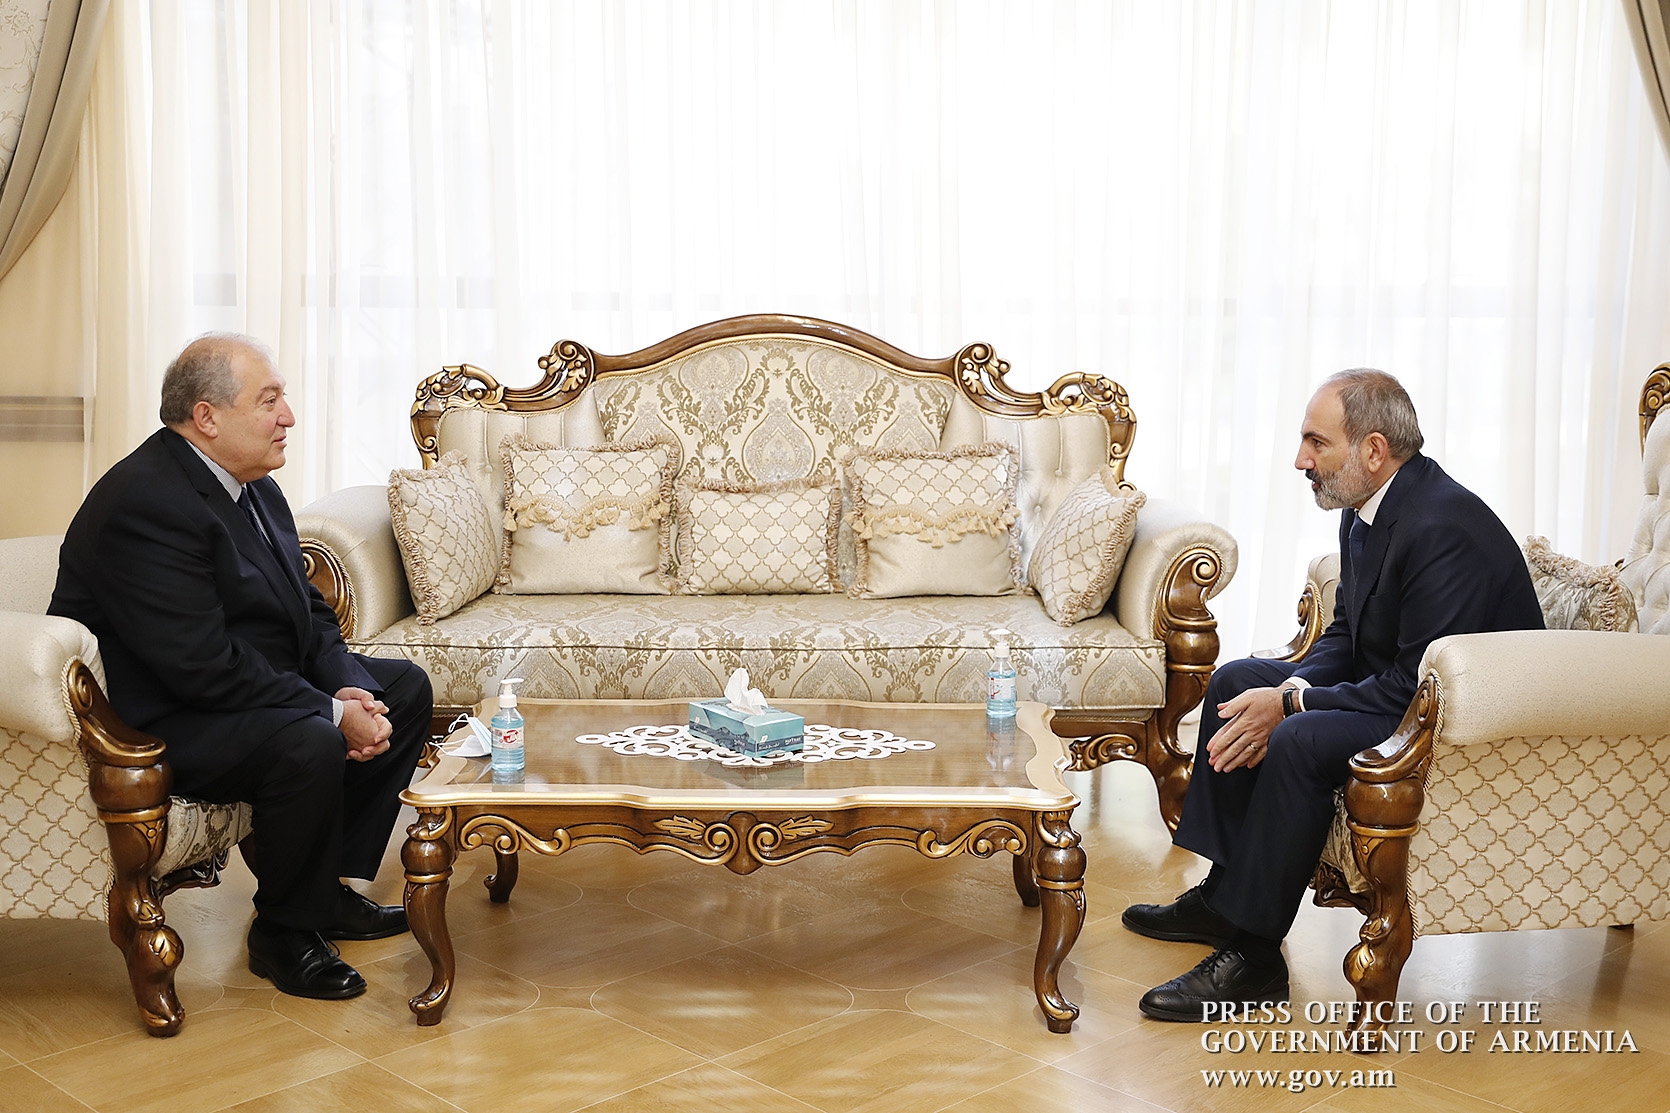 Cumhurbaşkanı Sarkisyan Genelkurmay Başkanı'nı görevden almayı reddetti